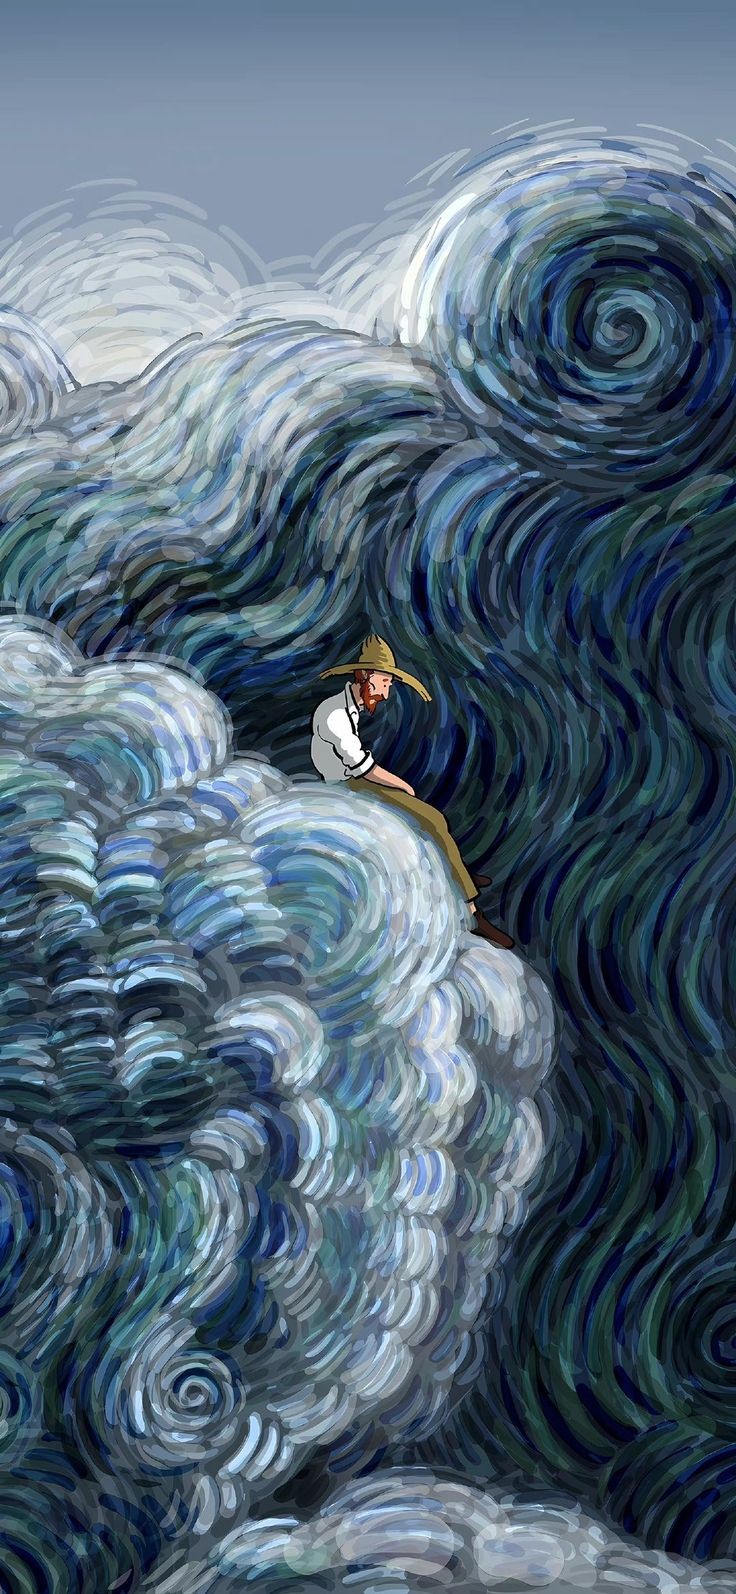 والپیپر فانتزی زیبا نقاشی هنرمند ونسان ونگوگ برای پروفایل